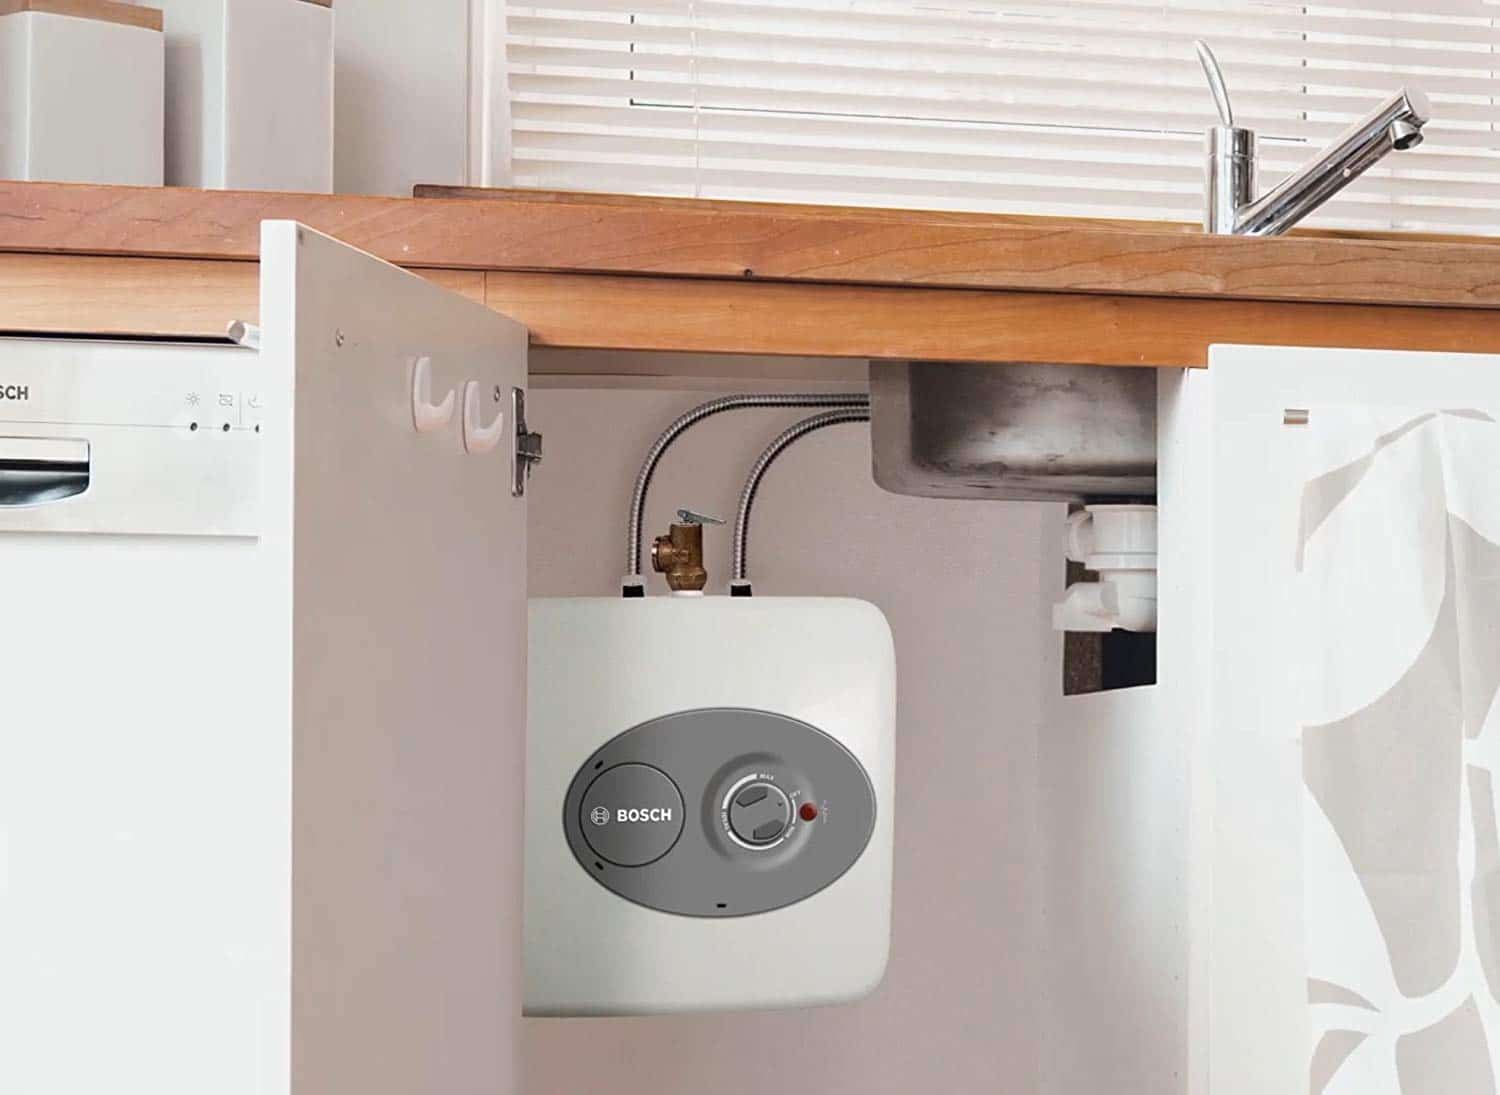 instant hot water heater for under kitchen sink